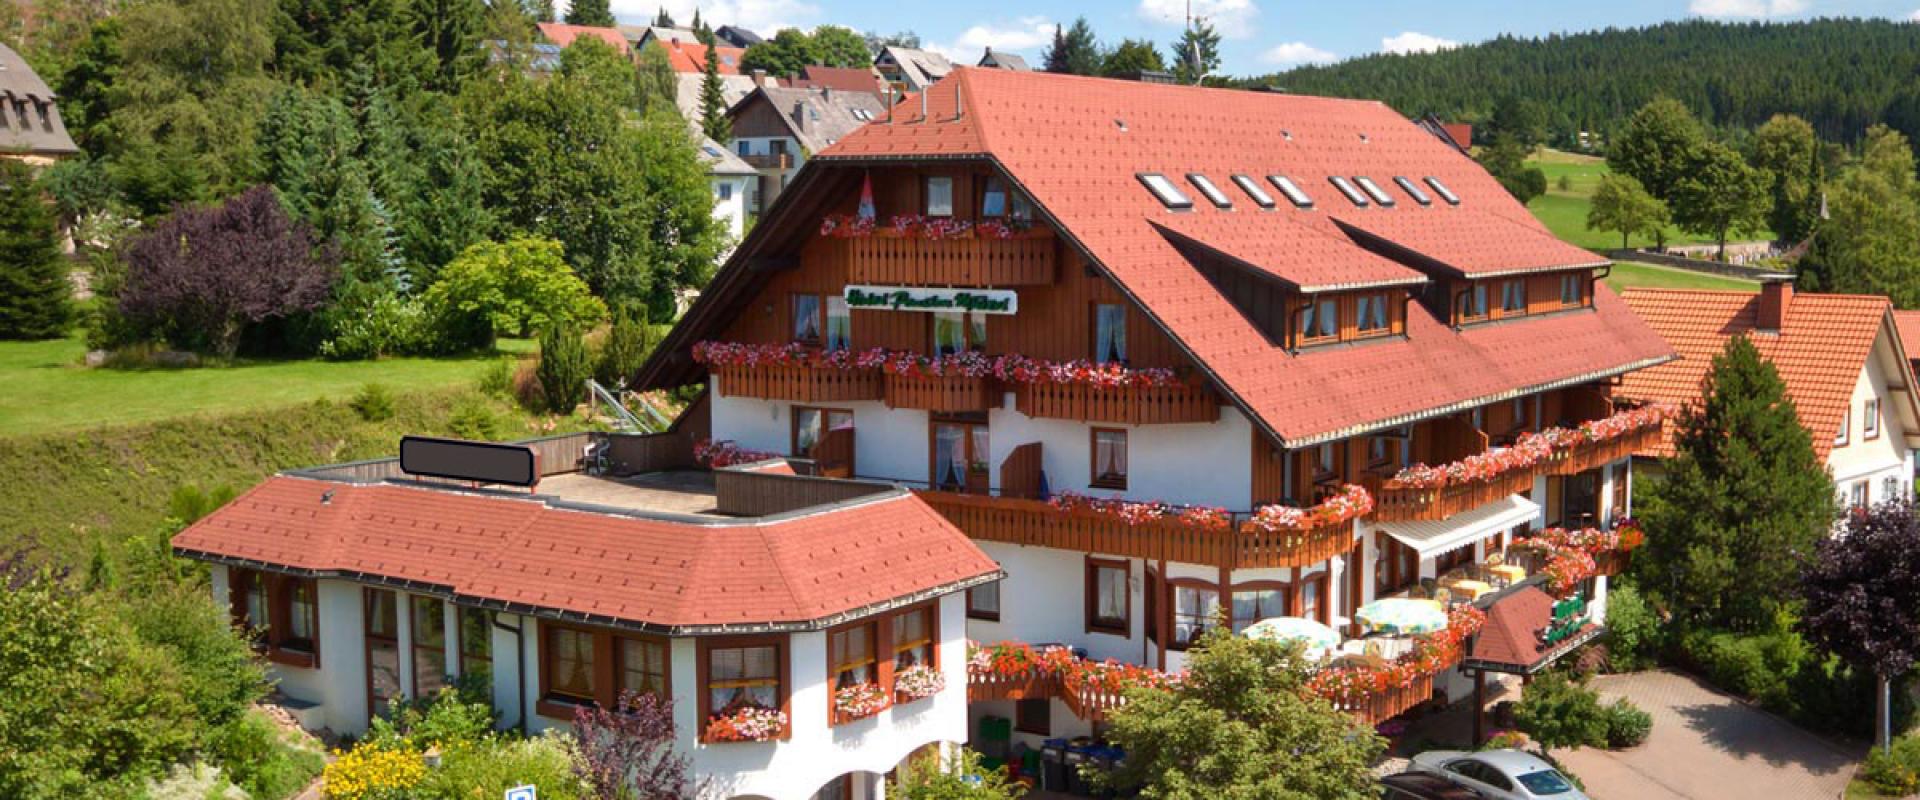 11457 Motorrad Hotel Mutzel im Schwarzwald aussen.jpg